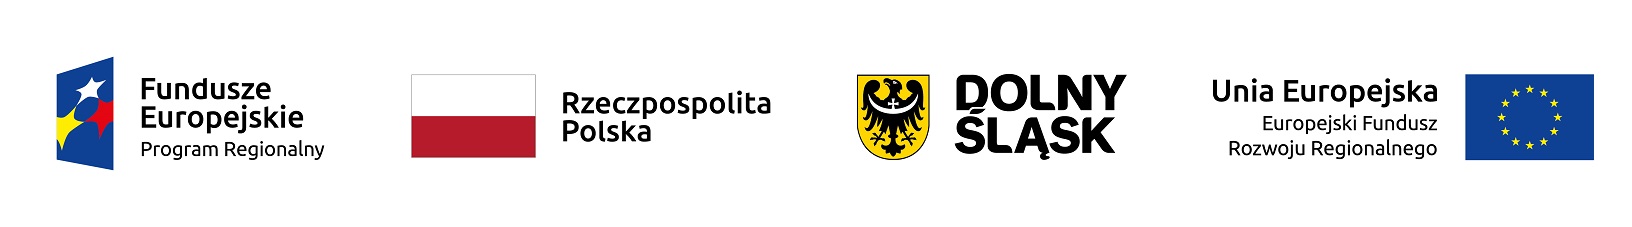 logotypy: Fundusze Europejskie, Polska, Dolny Śląsk, Unia Europejska